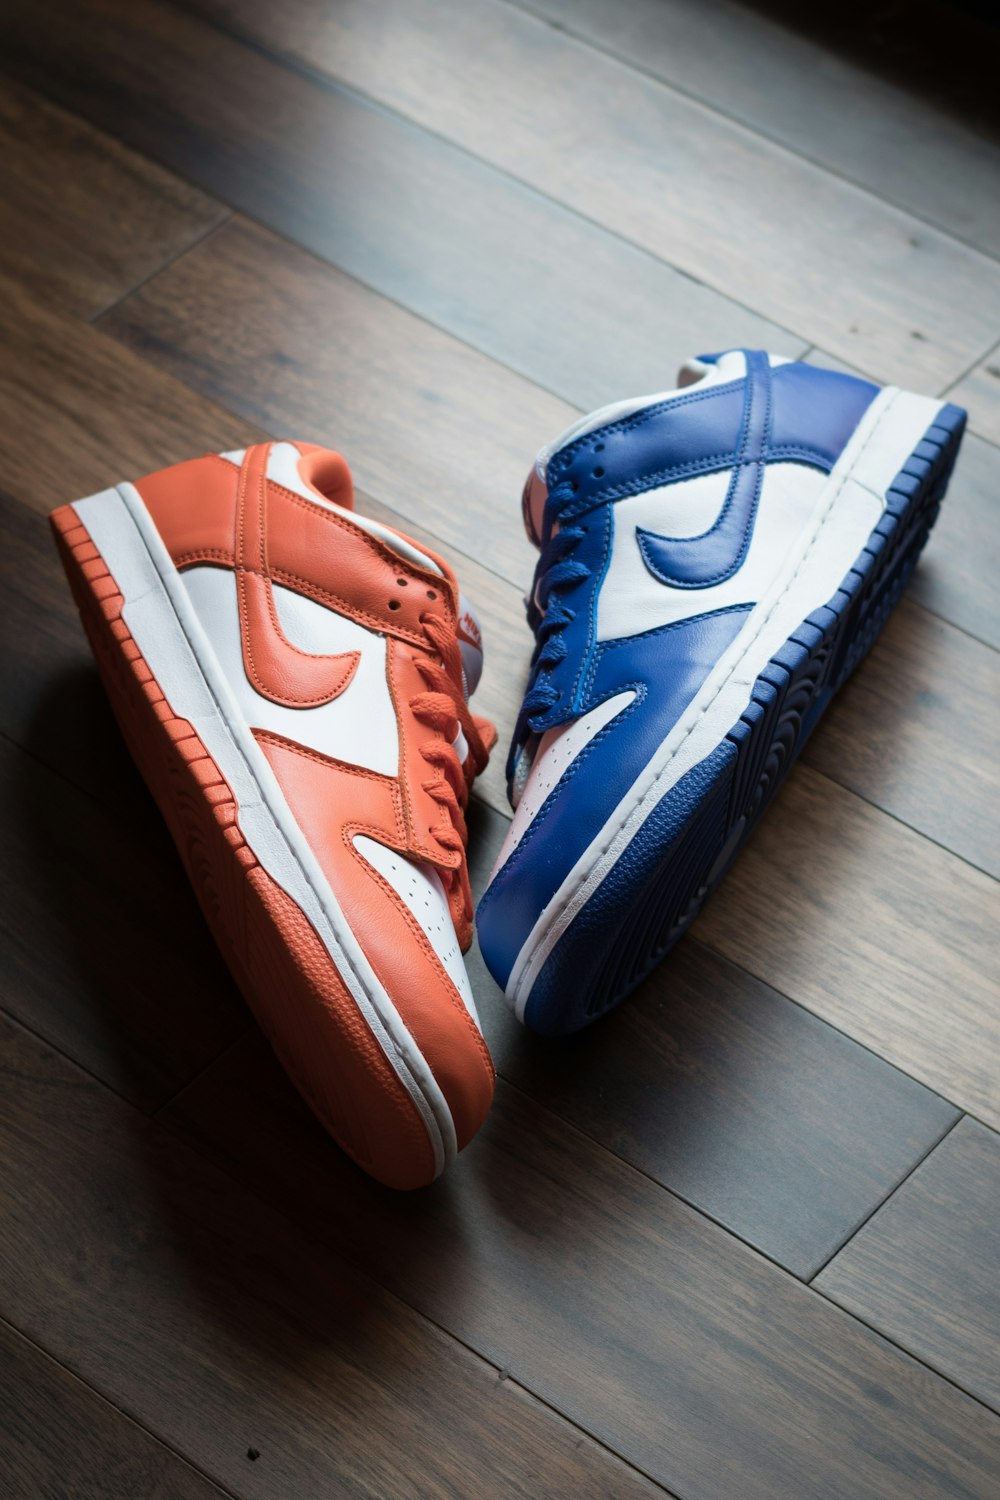 Foto zapatillas de baloncesto nike naranja y azul – Imagen Tailandia gratis  en Unsplash